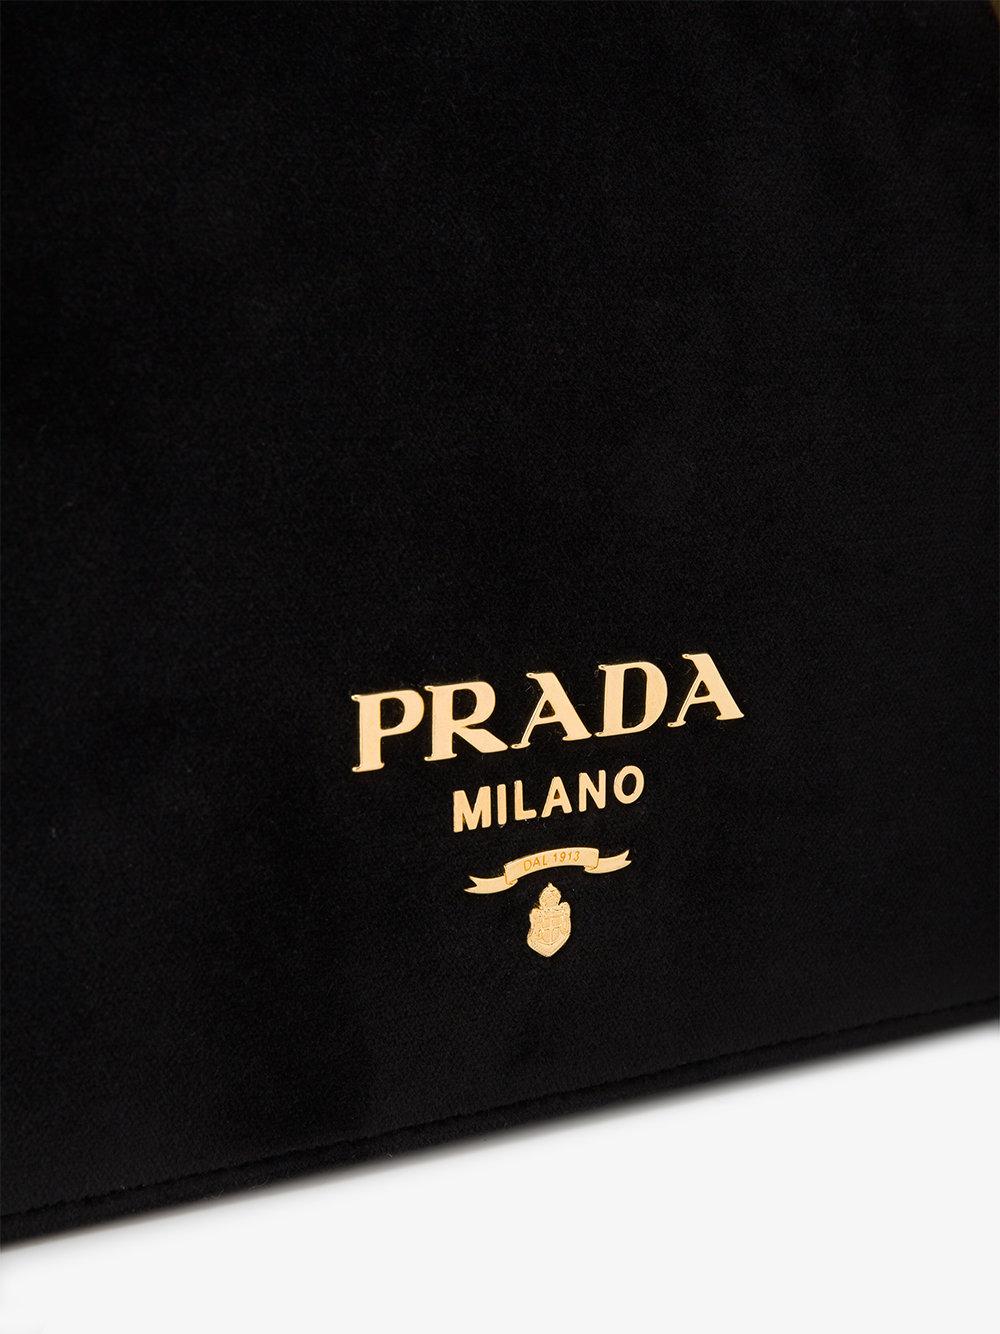 Prada Velvet Pattina Bag With Gold Chain in Black